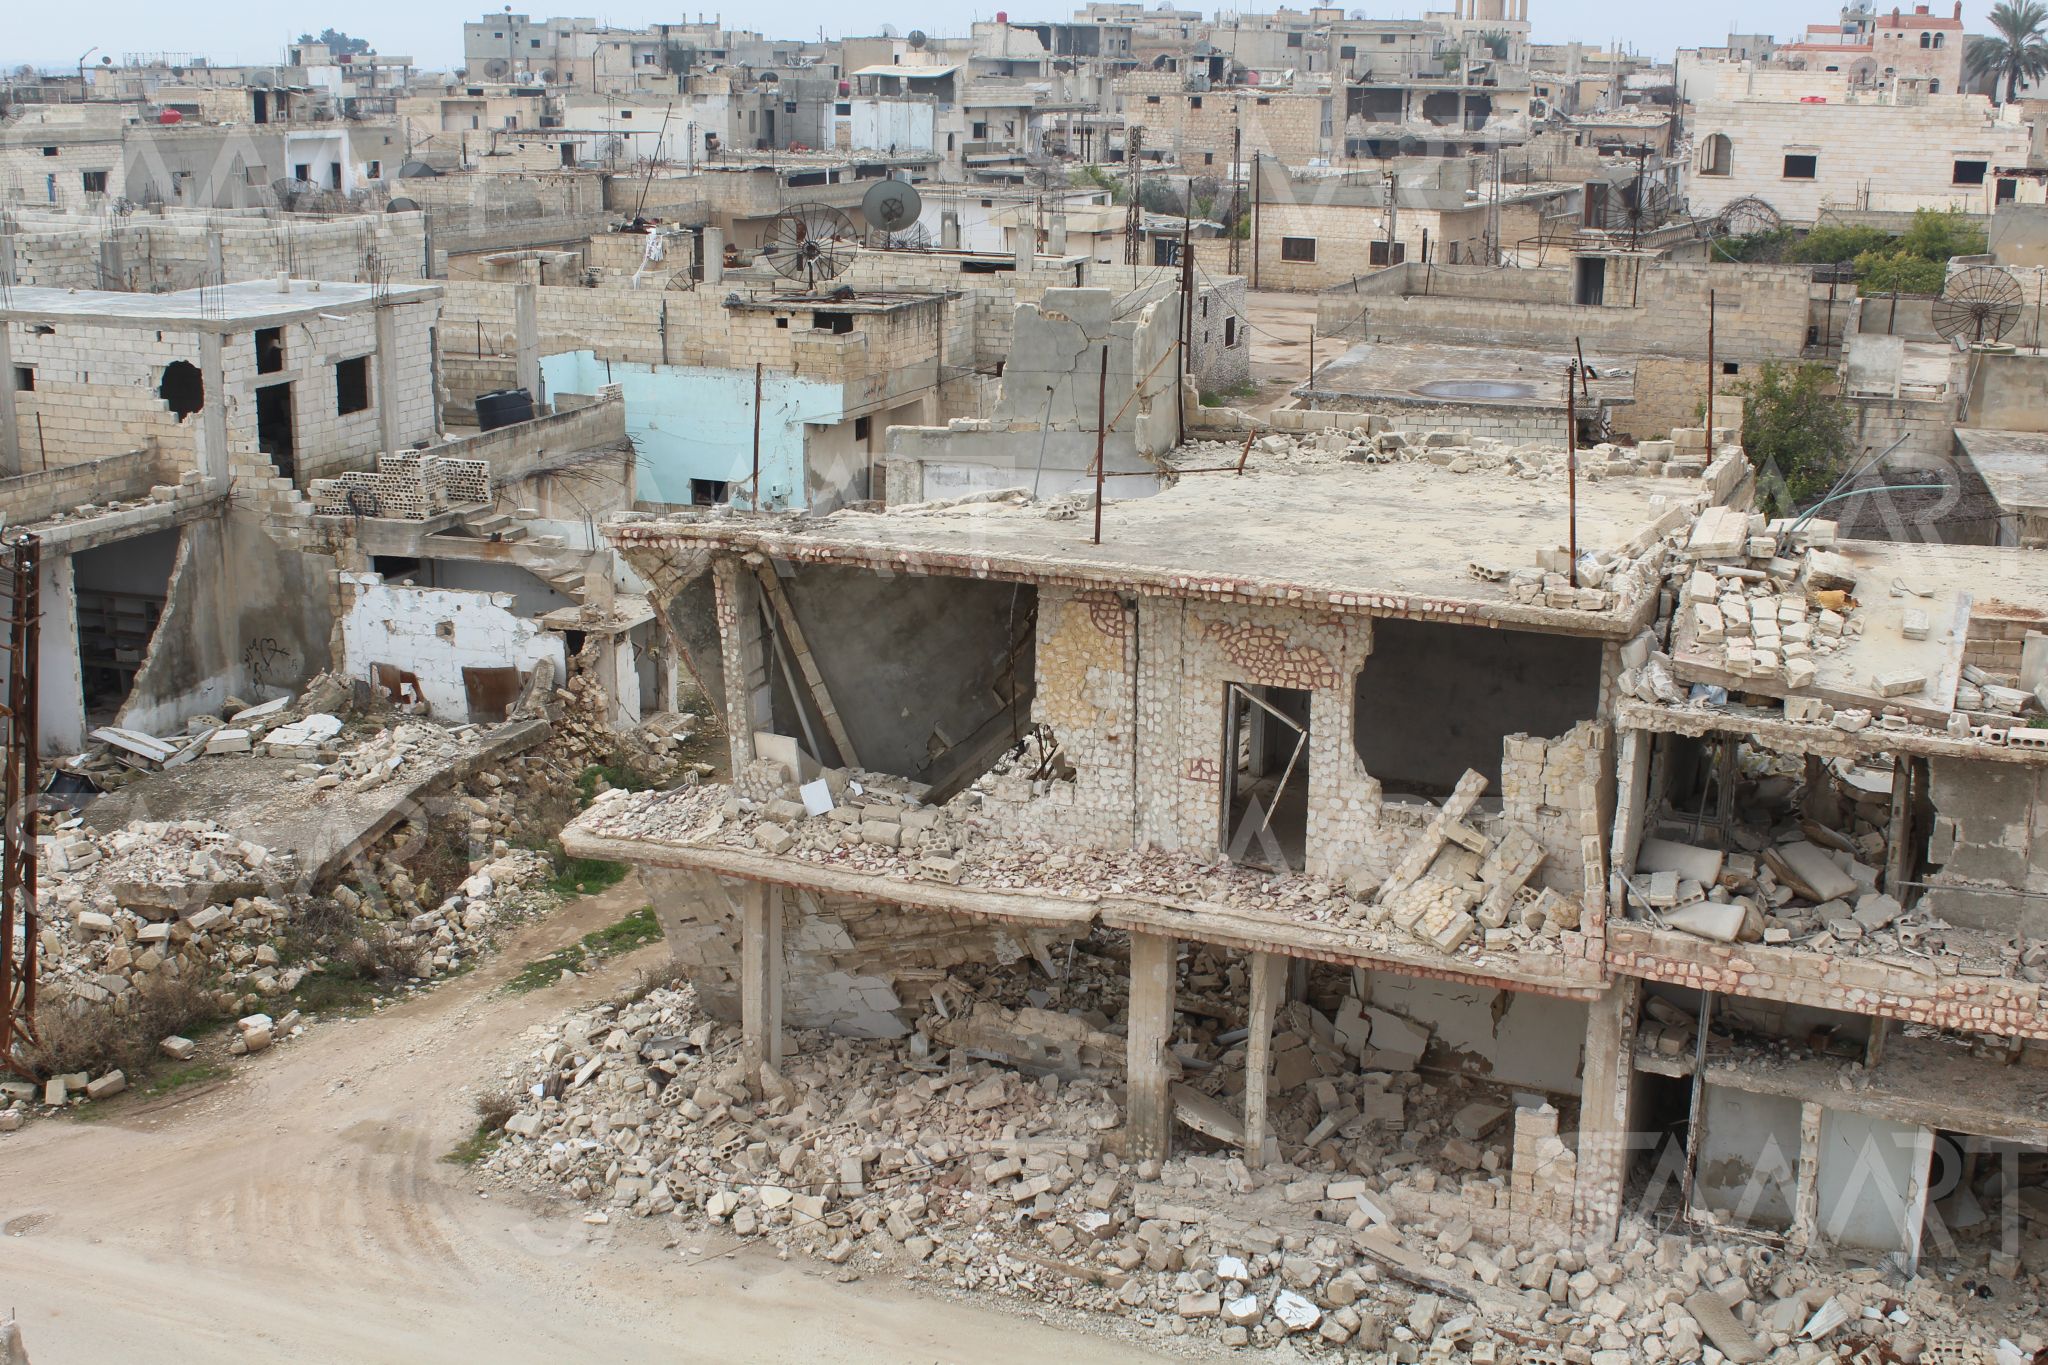 مشروع إعادة الإعمار لمدينتي (كفرزيتا، واللطامنة) في ريف حماة الشمالي الخاليتين من السكان، والذي أطلقه محافظ حماة (محمد كريشاتي) وروَّج له إعلام نظام الأسد